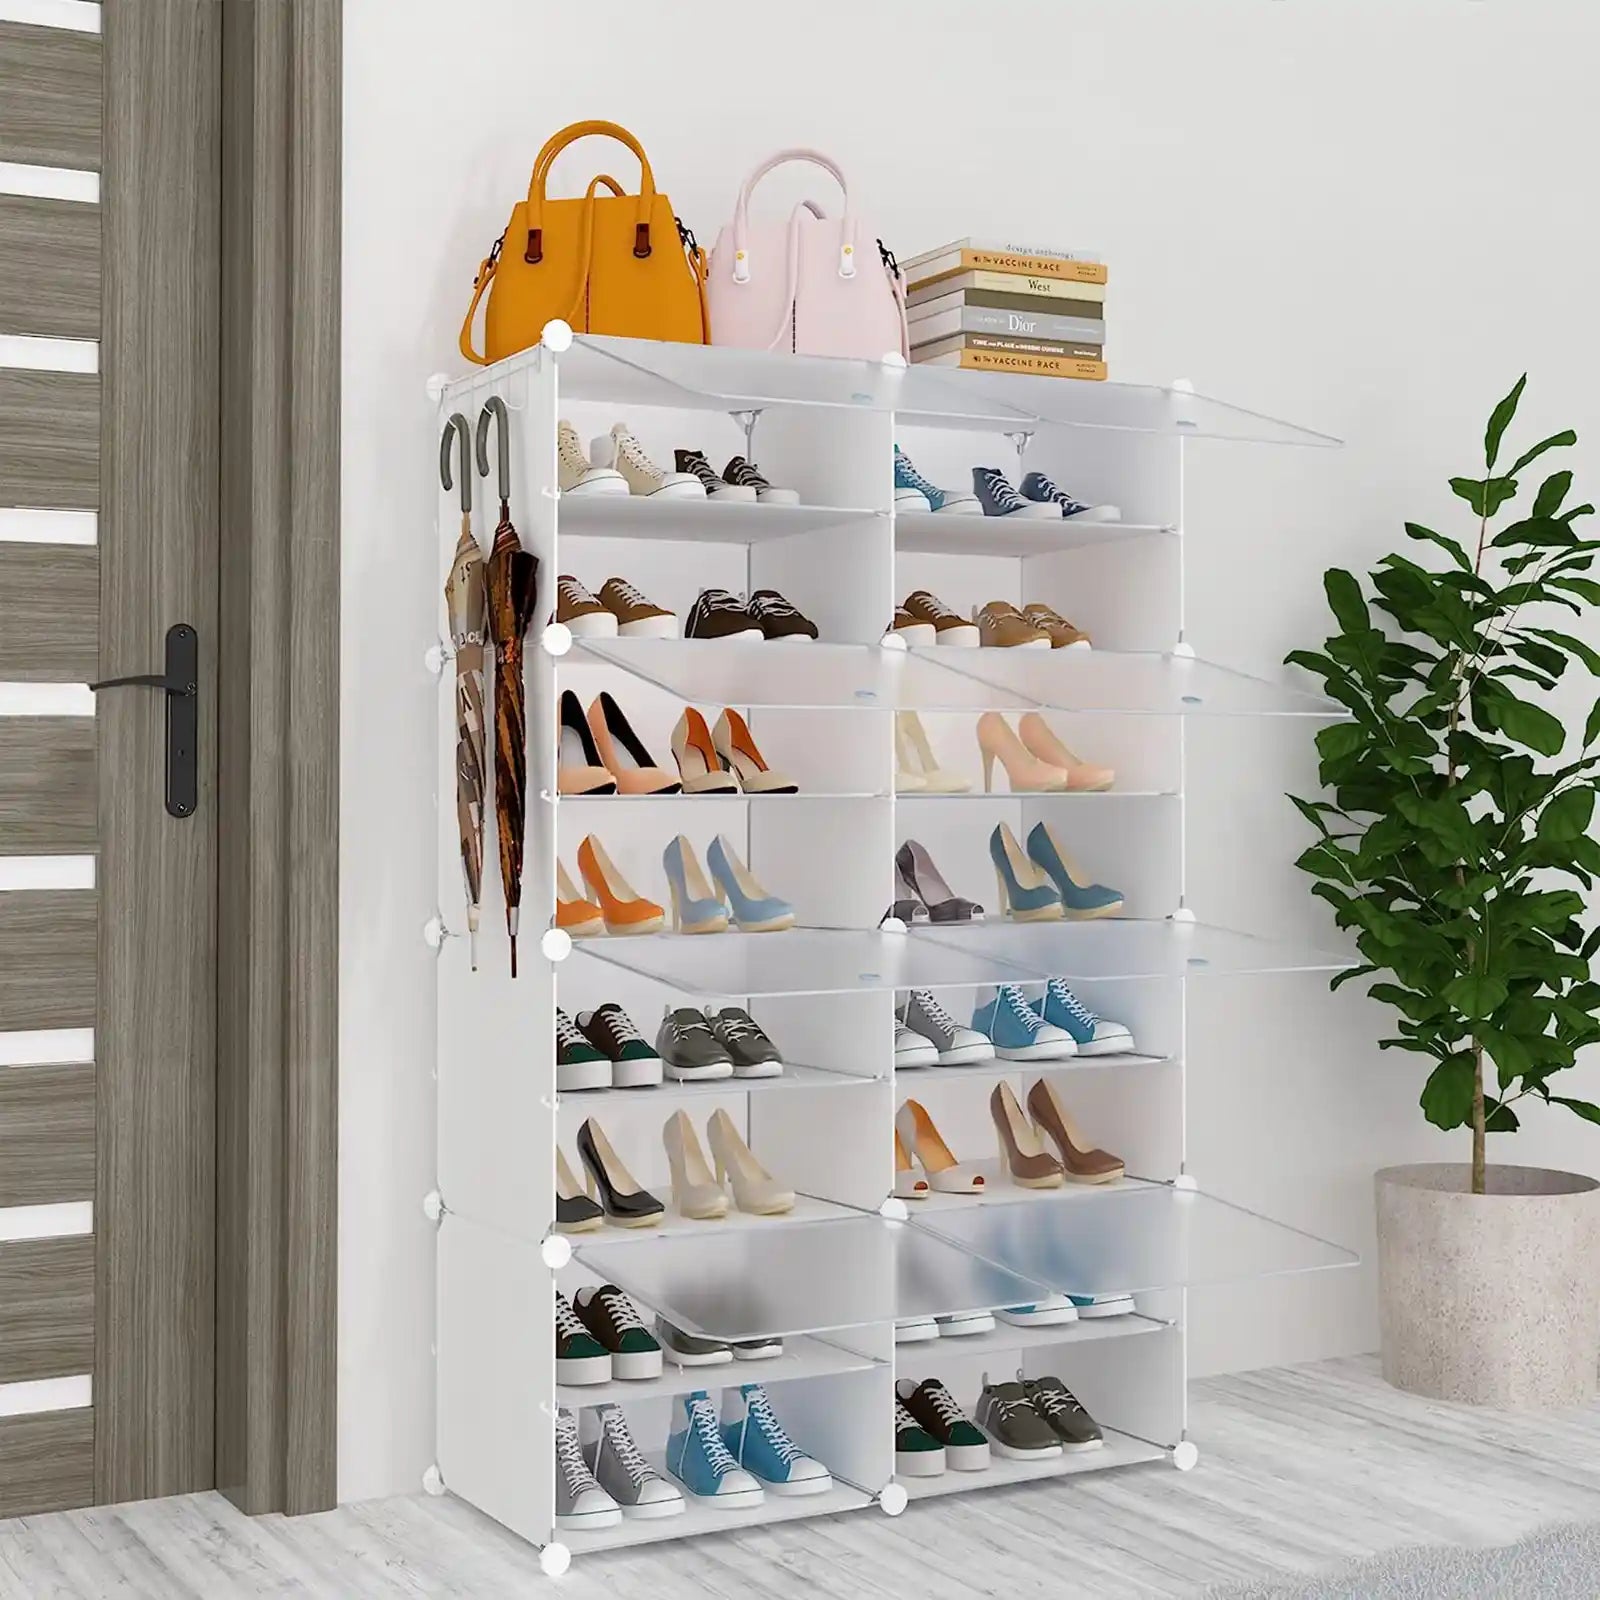 Shoe Storage , Shoe Rack Organizer for Closet Shoe Cabinet with Door Shoe Shelves for Closet,Entryway,Hallway,Bedroom